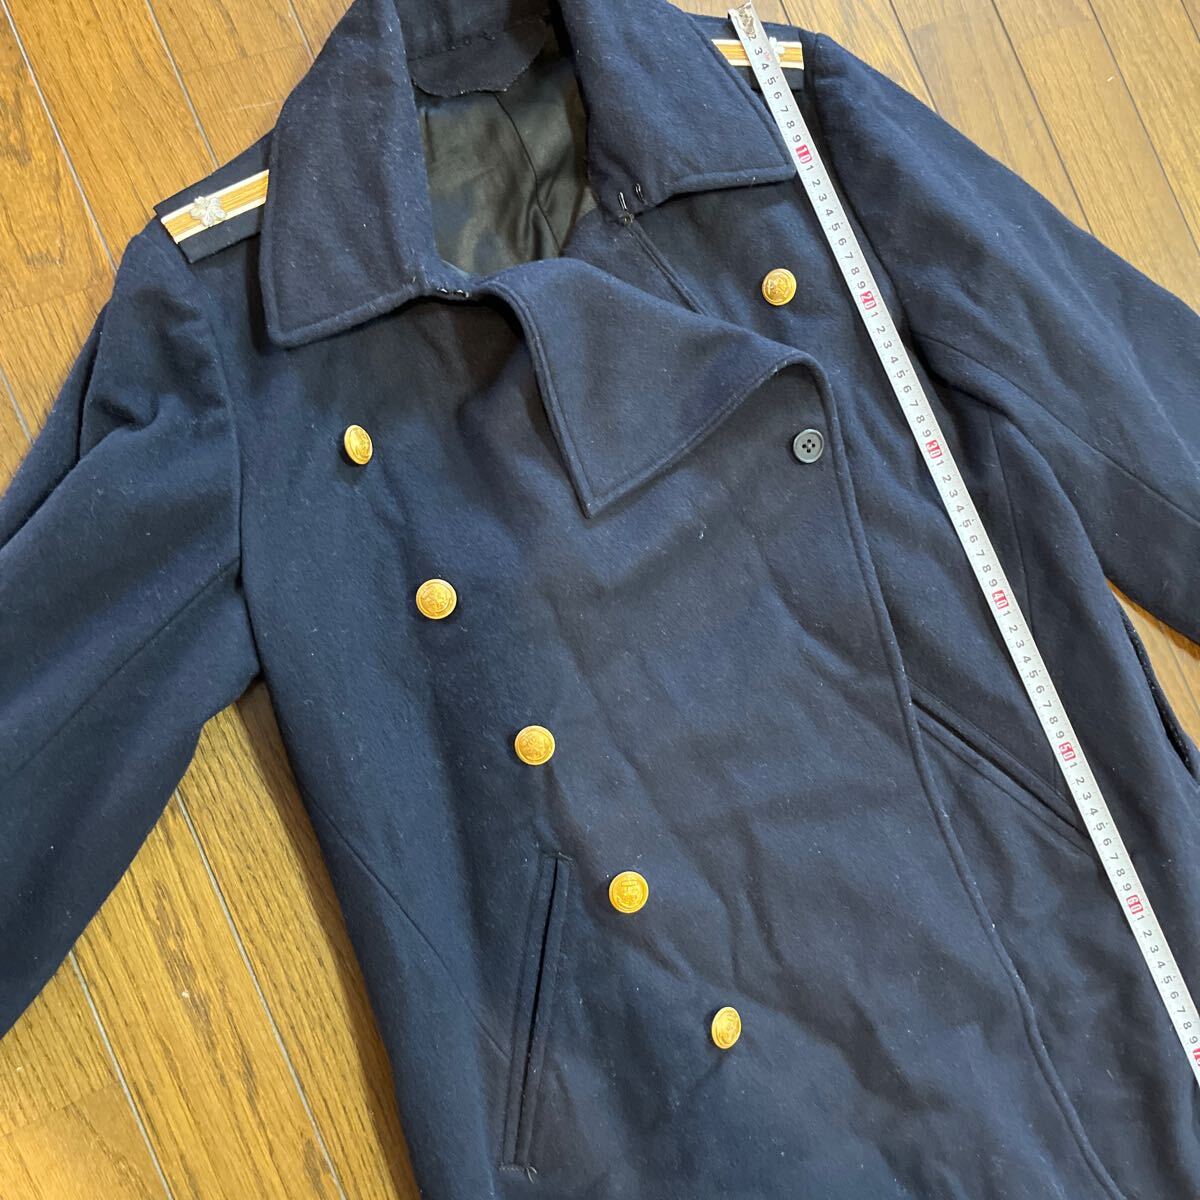  оригинал военная одежда армия . армия hakama Япония военно-морской флот Япония армия военно-морской флот пальто длинный рукав внешний 